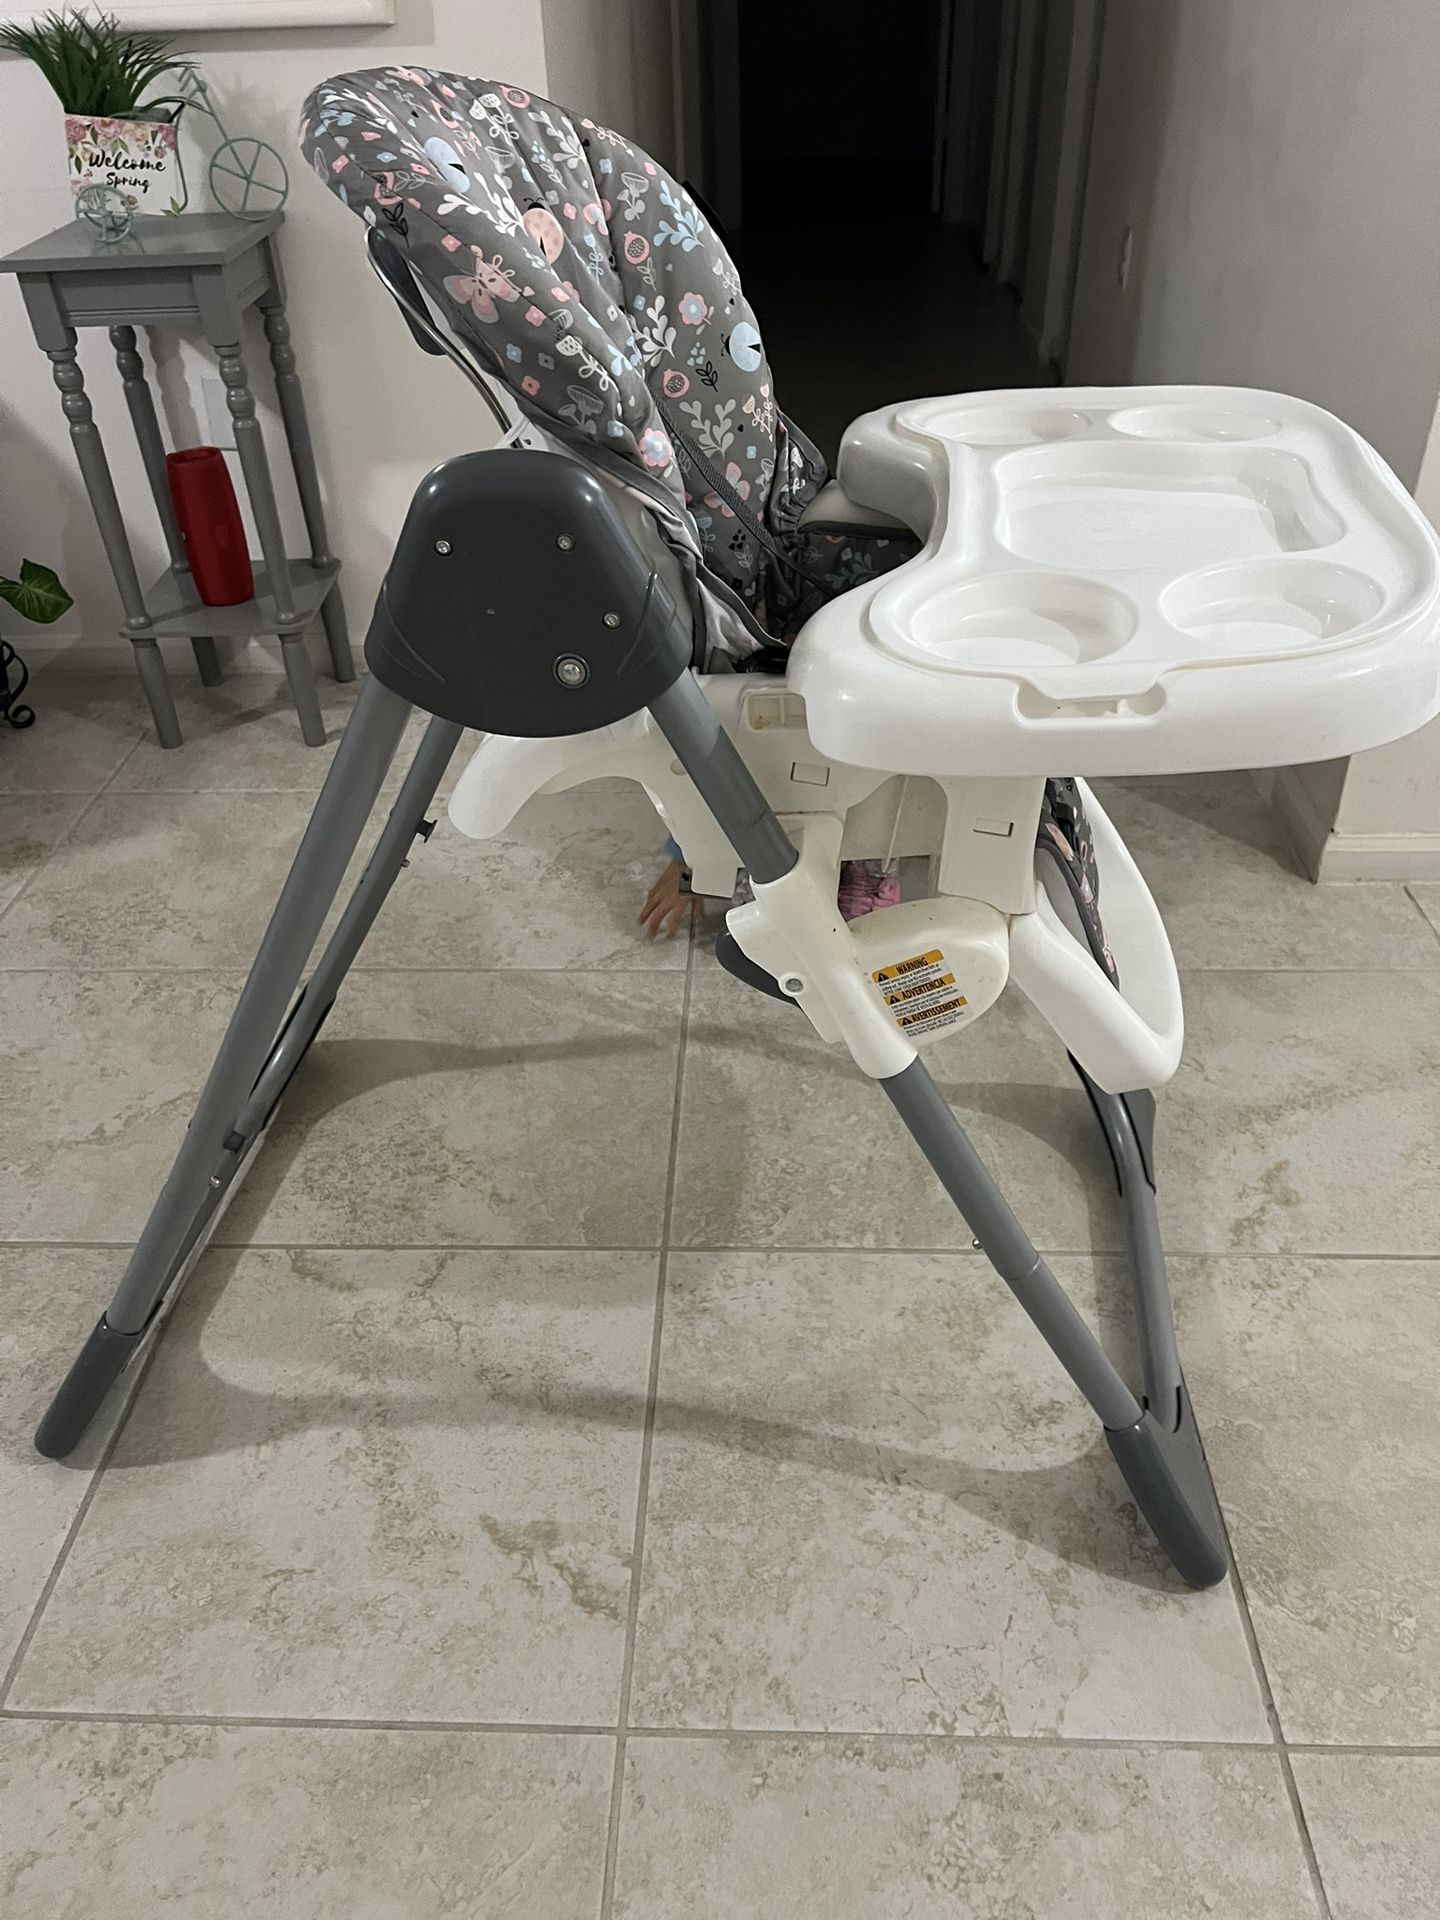 BabyTrend High Chair/Feeding Chair $30